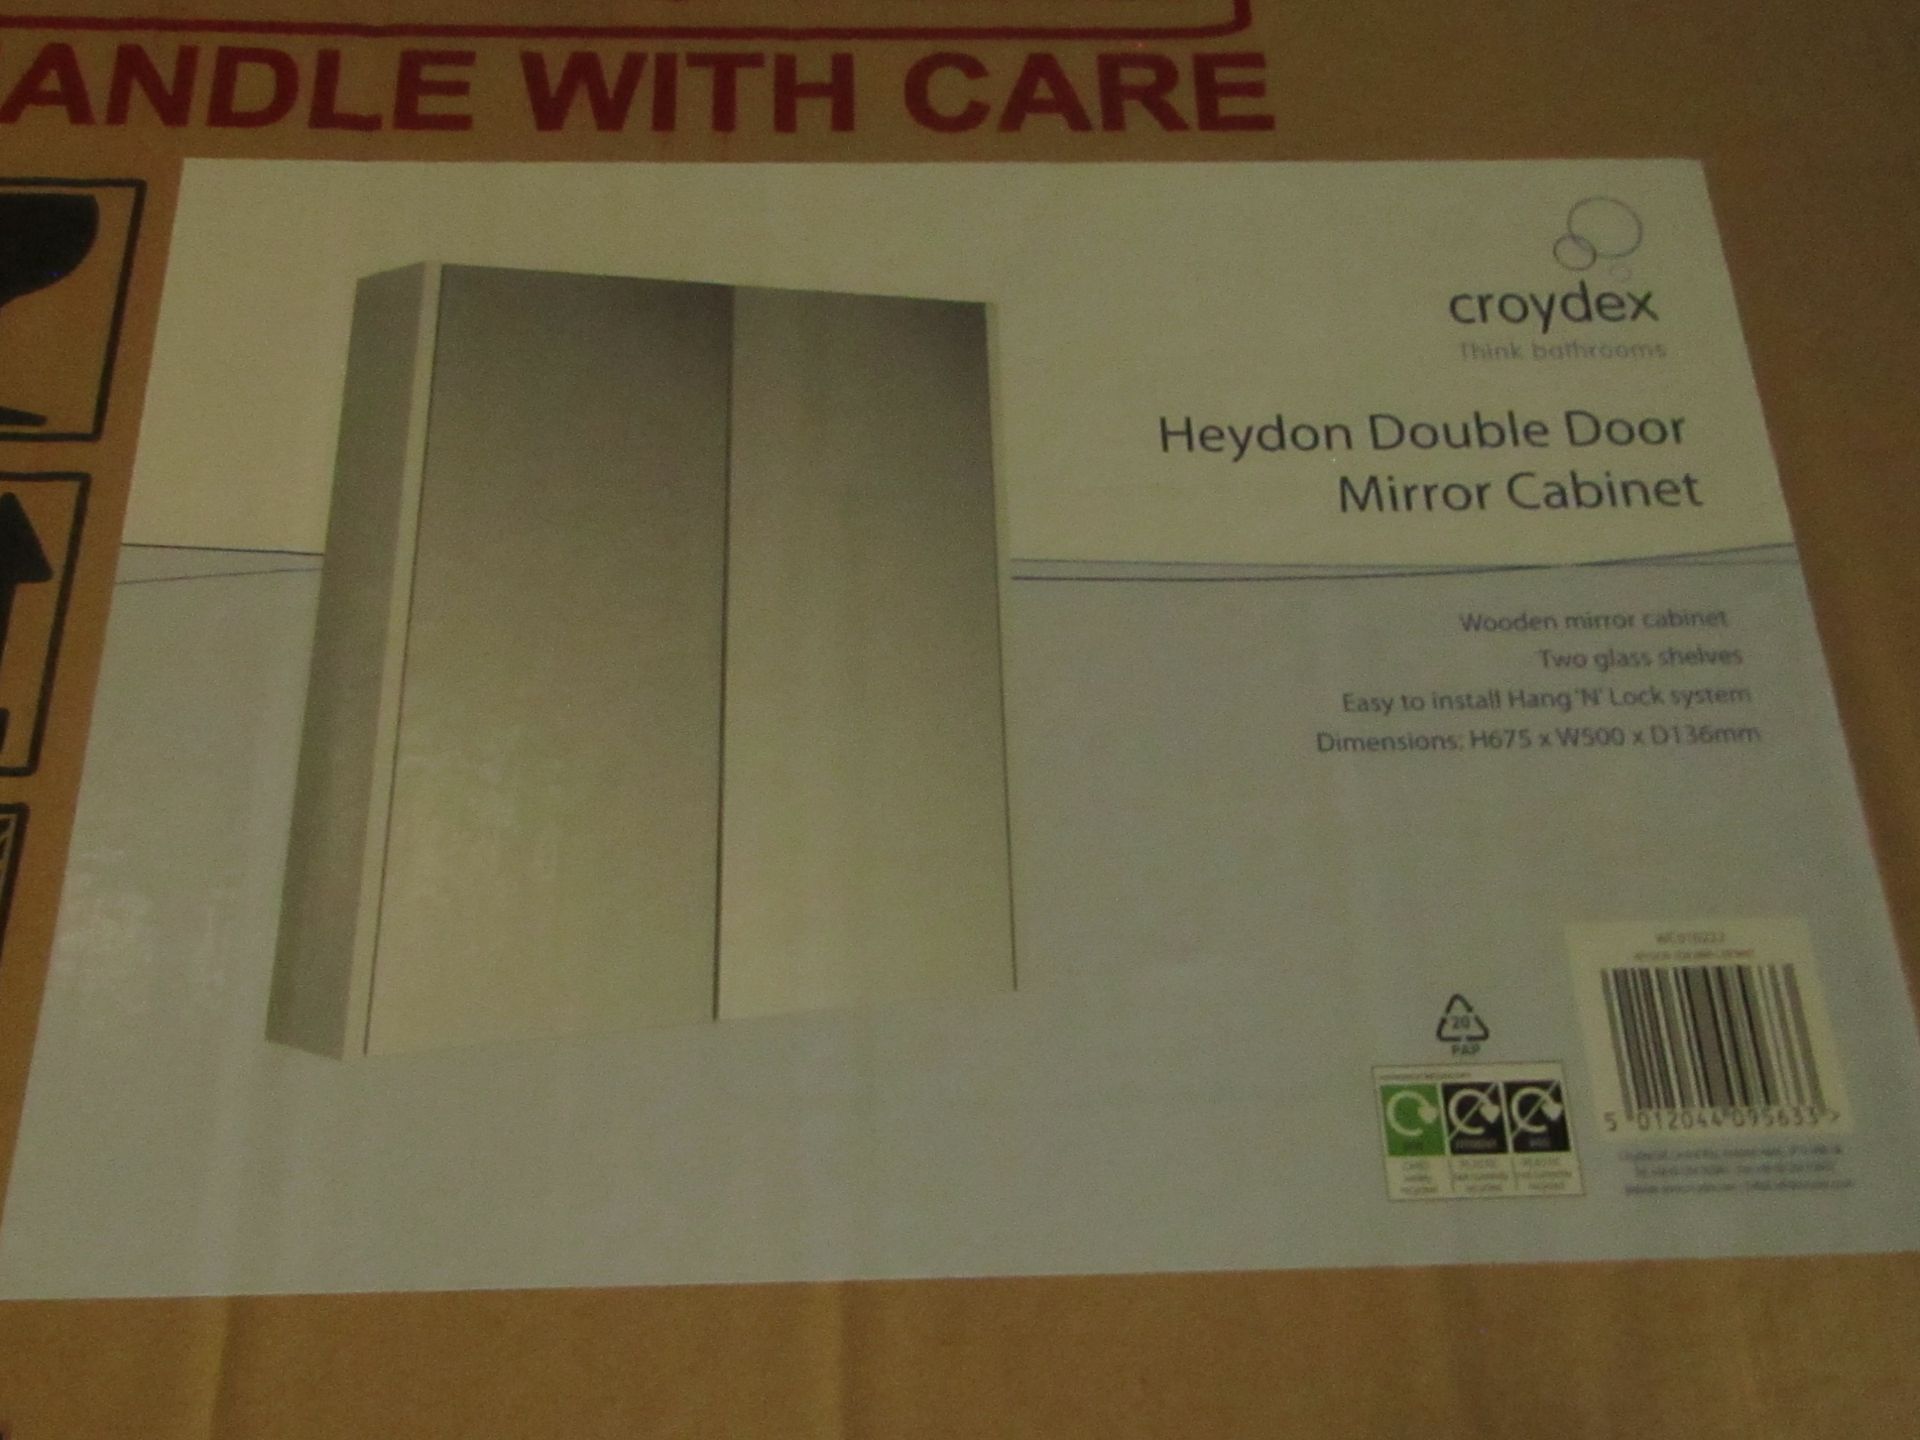 Croydex - Heydon Double Door Mirror Cabinet ( H675 x W500 x D136 mm ) - Boxed.